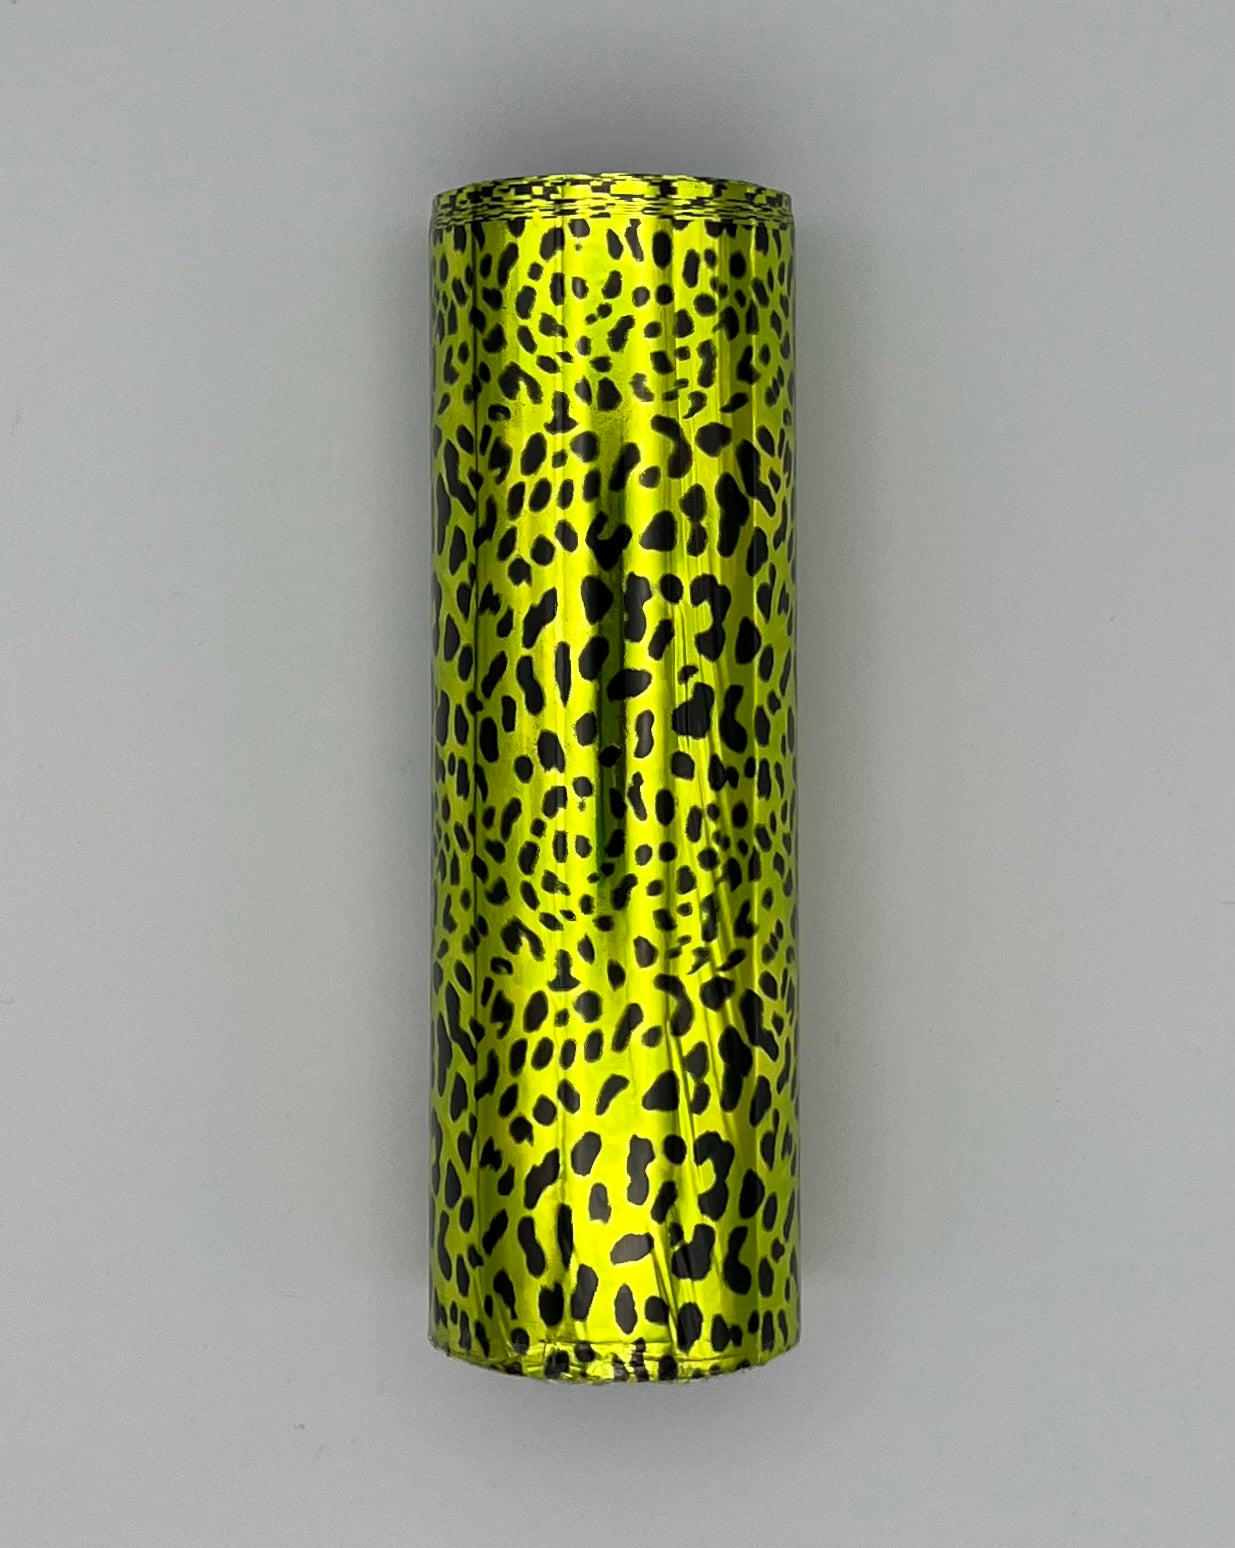 HPS - Slime Green Leopard Hot Stamp Foil